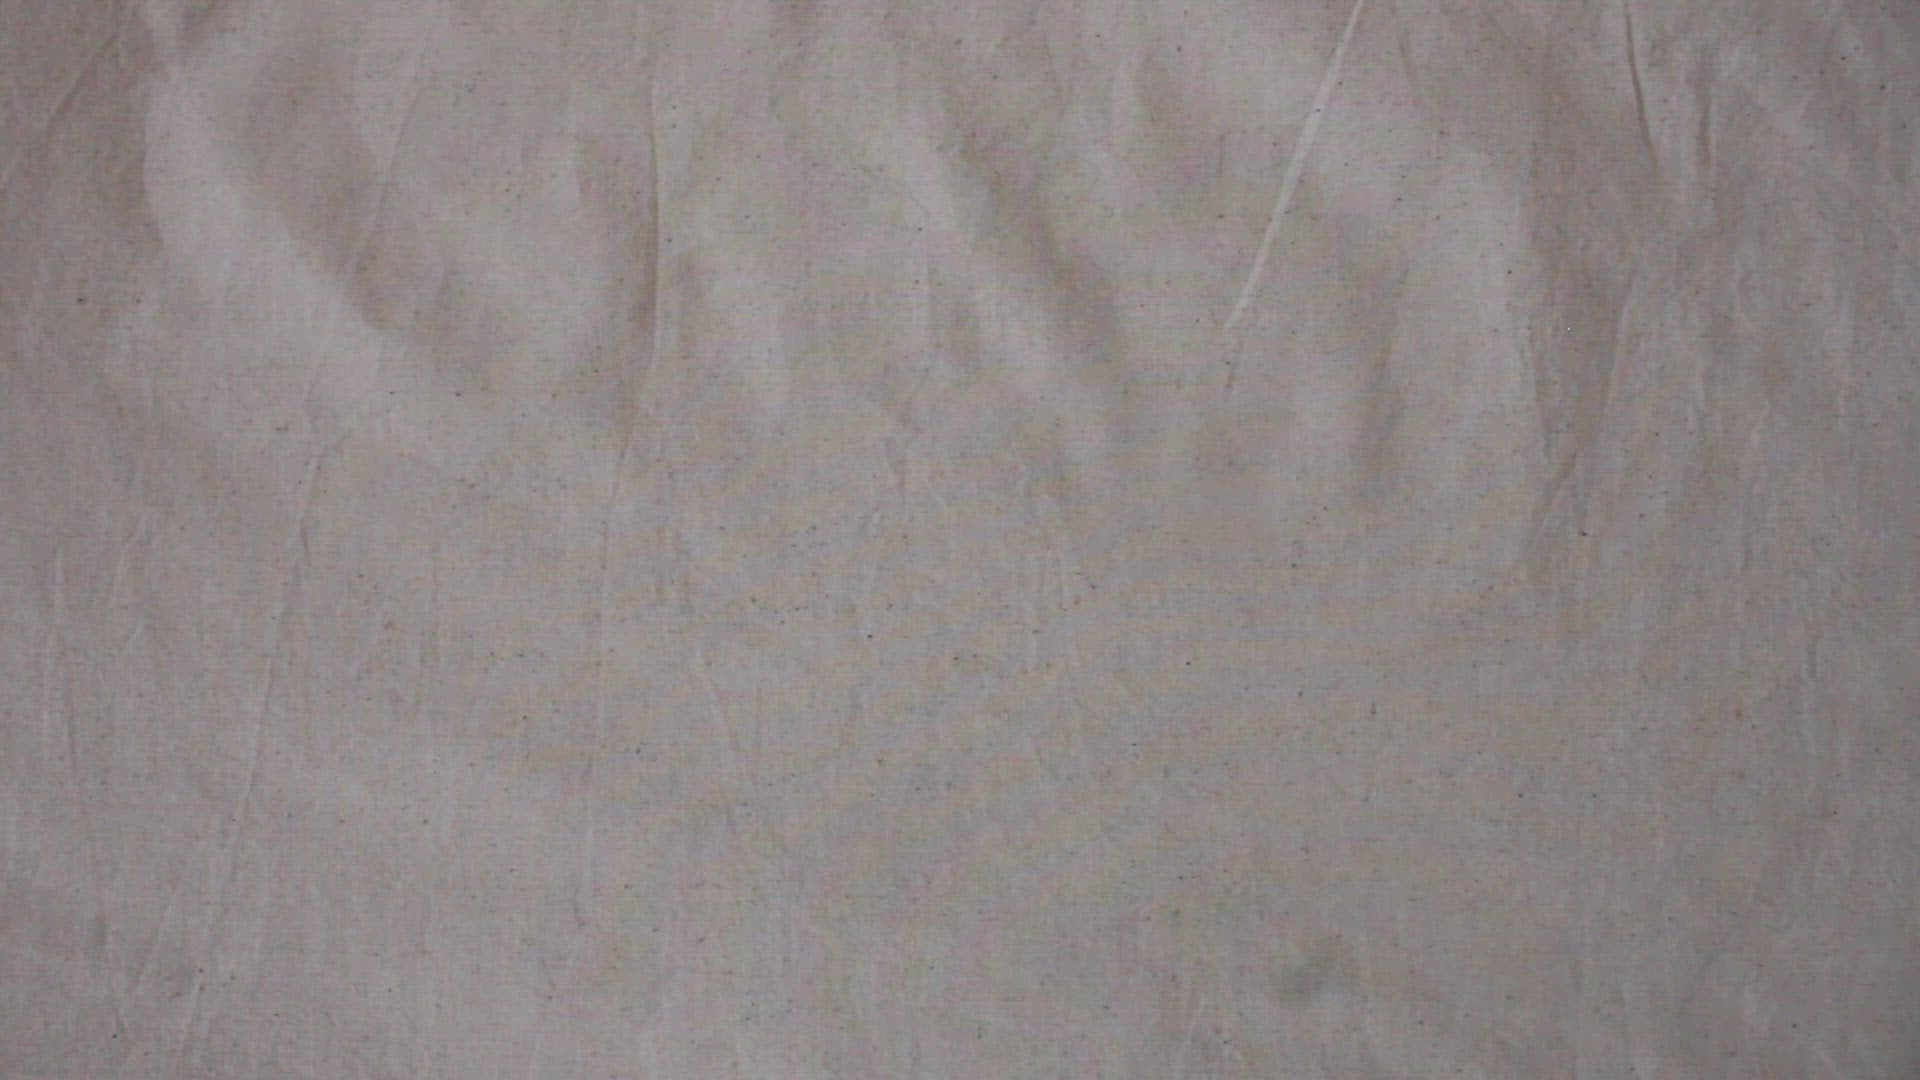 Kala Cotton Handloom Fabric